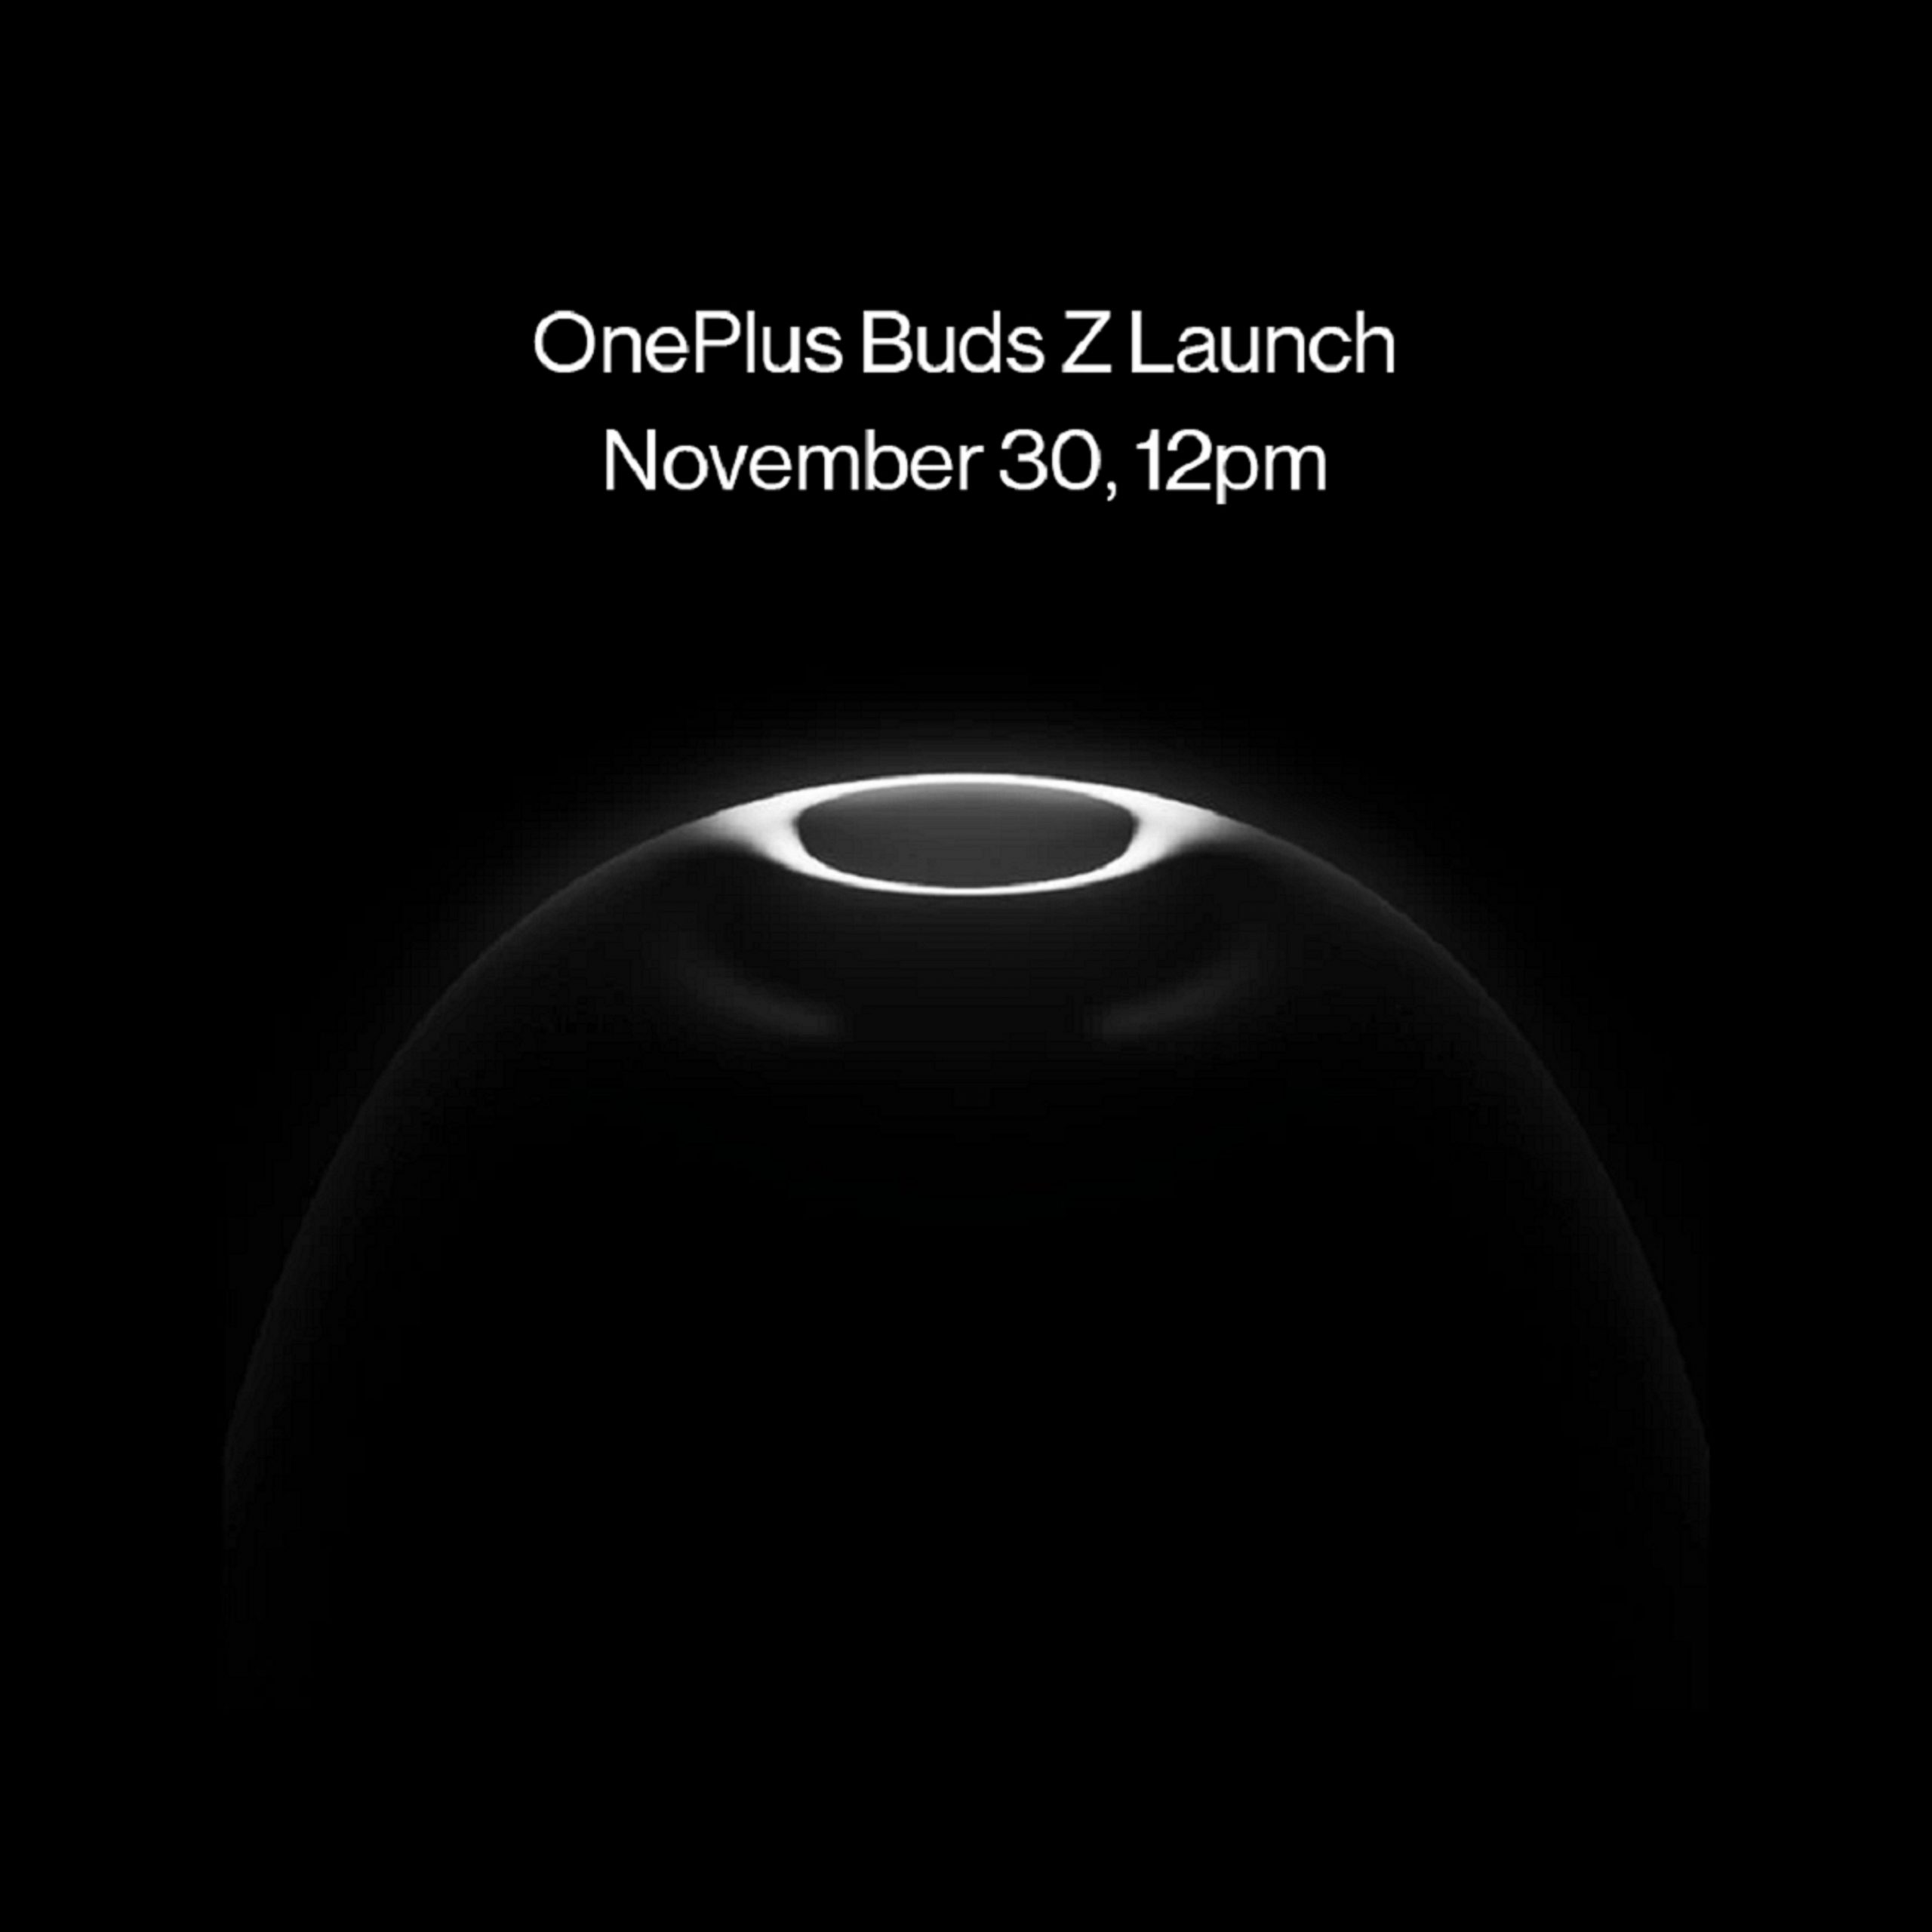 OnePlus Buds Z Launch scaled